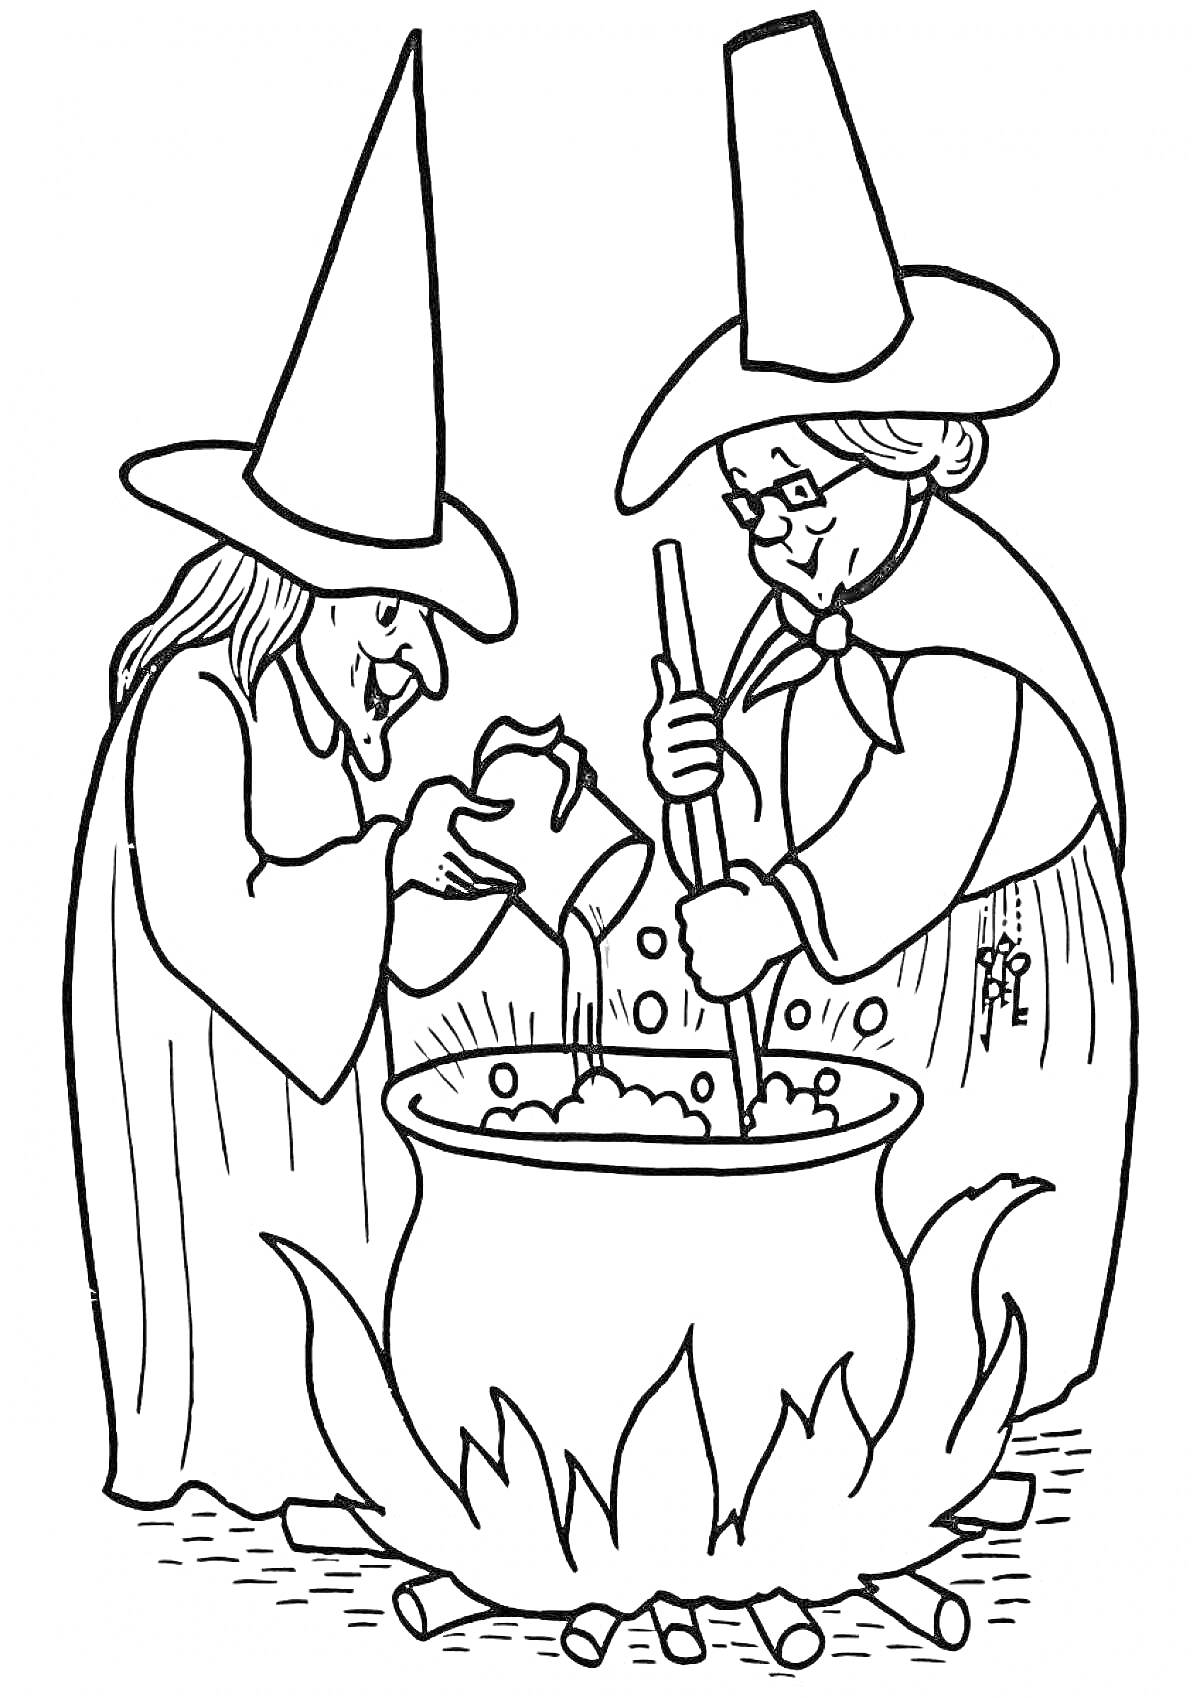 Две ведьмы у котла на огне, одна из ведьм заливает жидкость в котёл, вторая ведьма помешивает содержимое